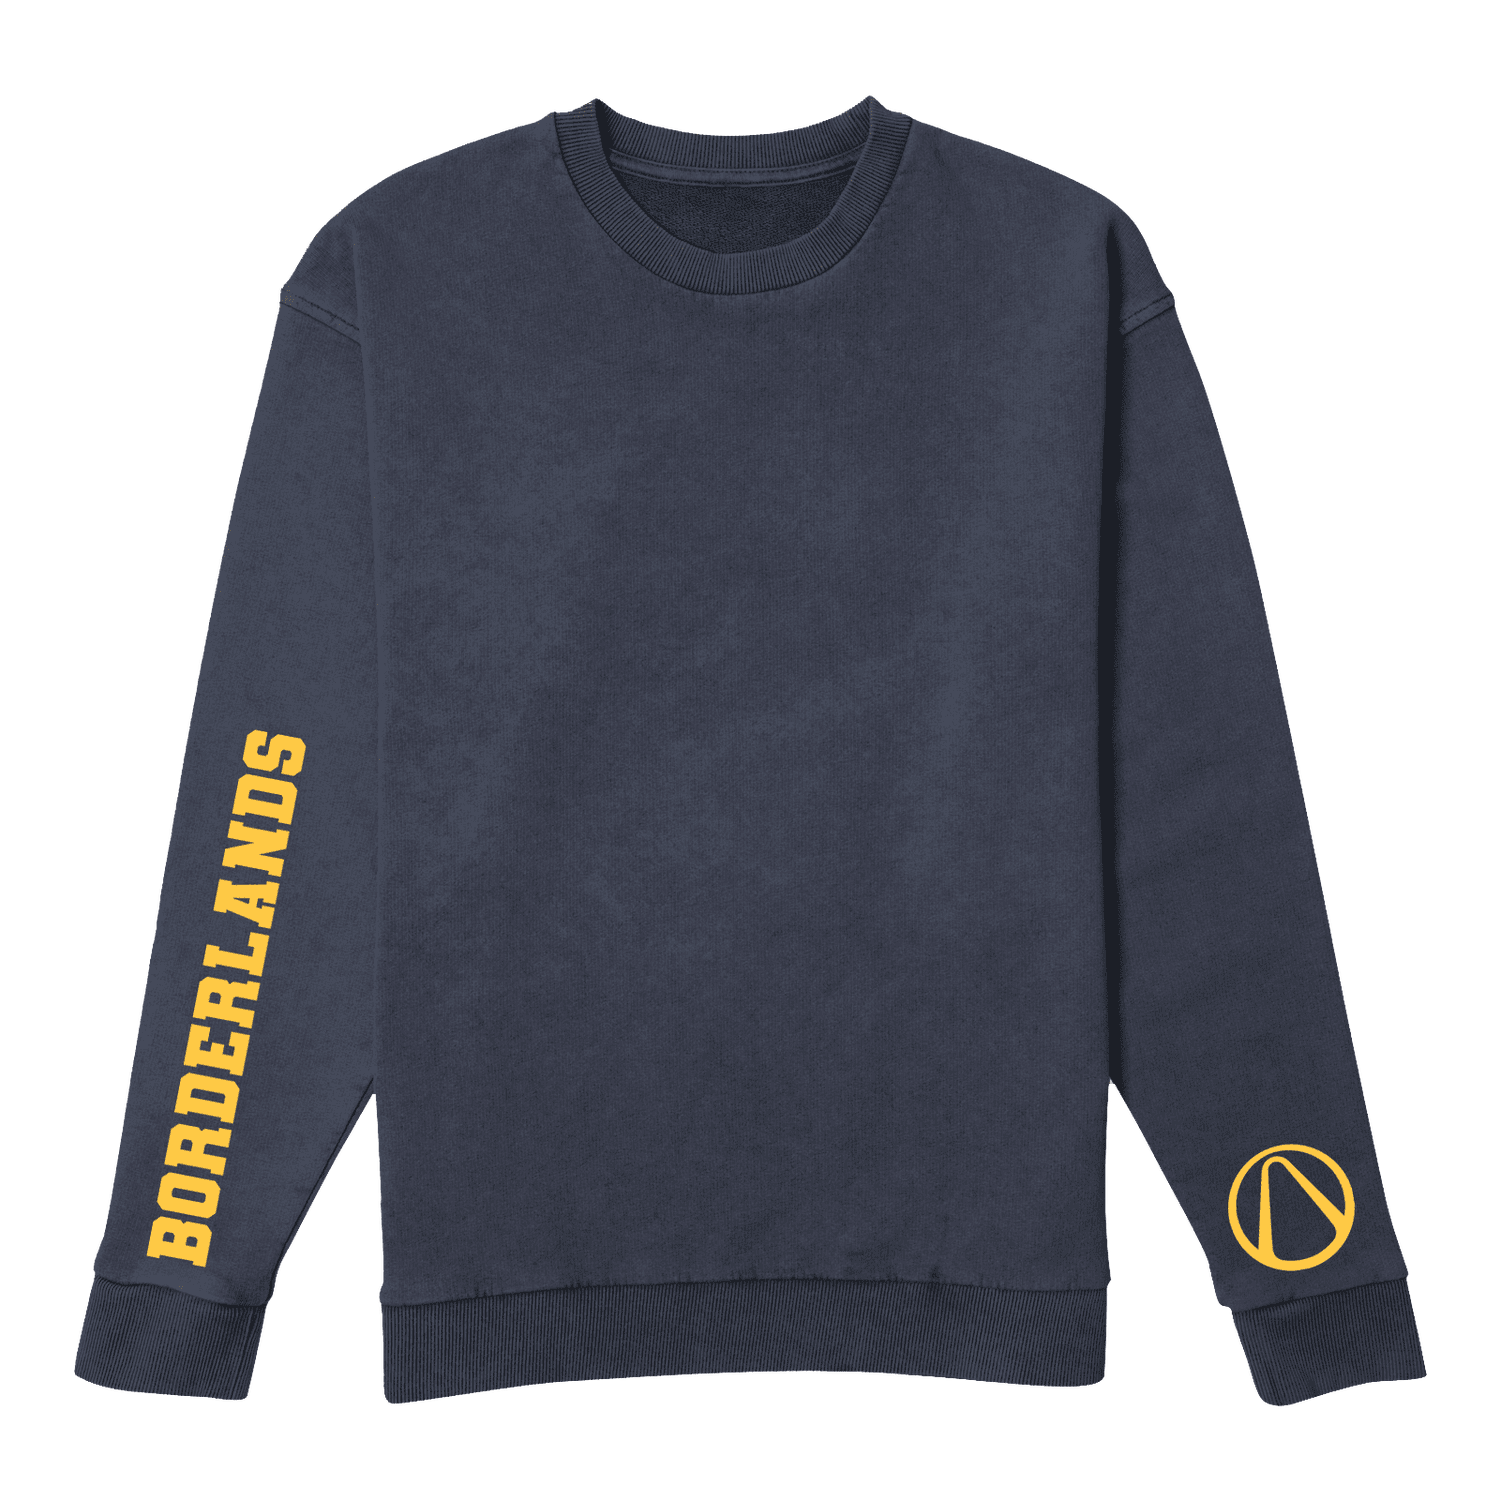 Borderlands Sweatshirt - Navy